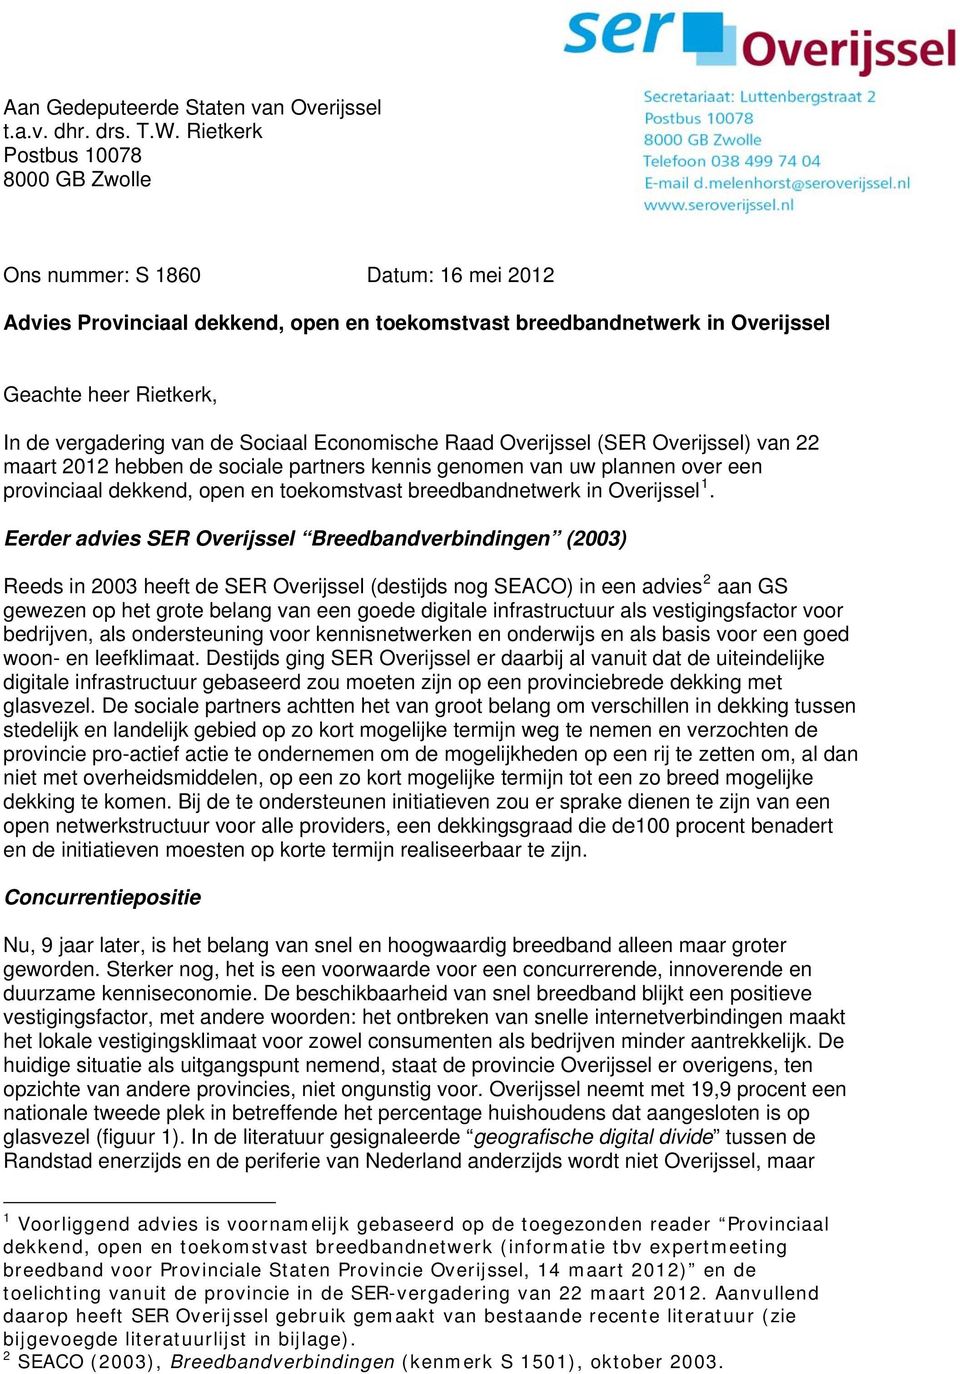 van de Sociaal Economische Raad Overijssel (SER Overijssel) van 22 maart 2012 hebben de sociale partners kennis genomen van uw plannen over een provinciaal dekkend, open en toekomstvast